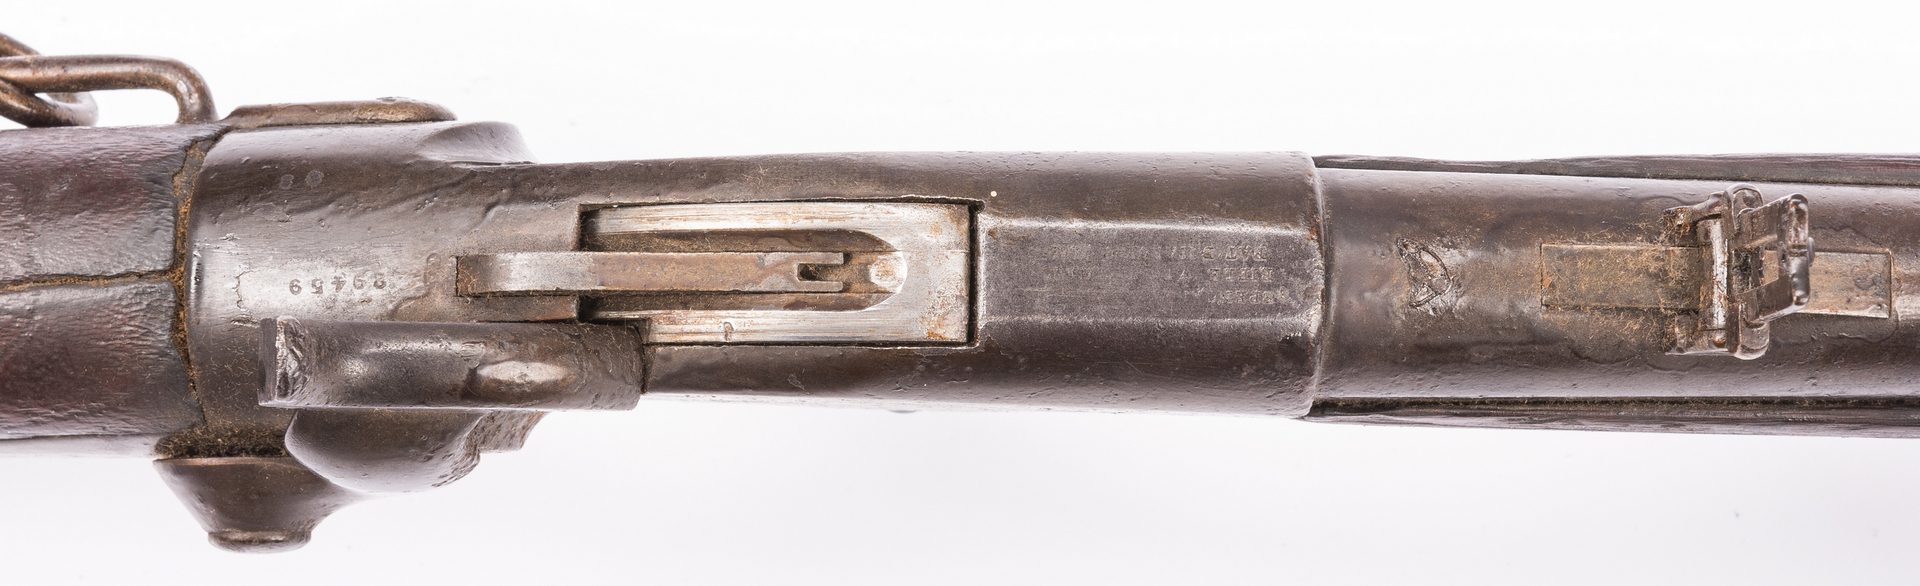 Lot 503: Civil War Model 1860 Spencer Repeating Carbine